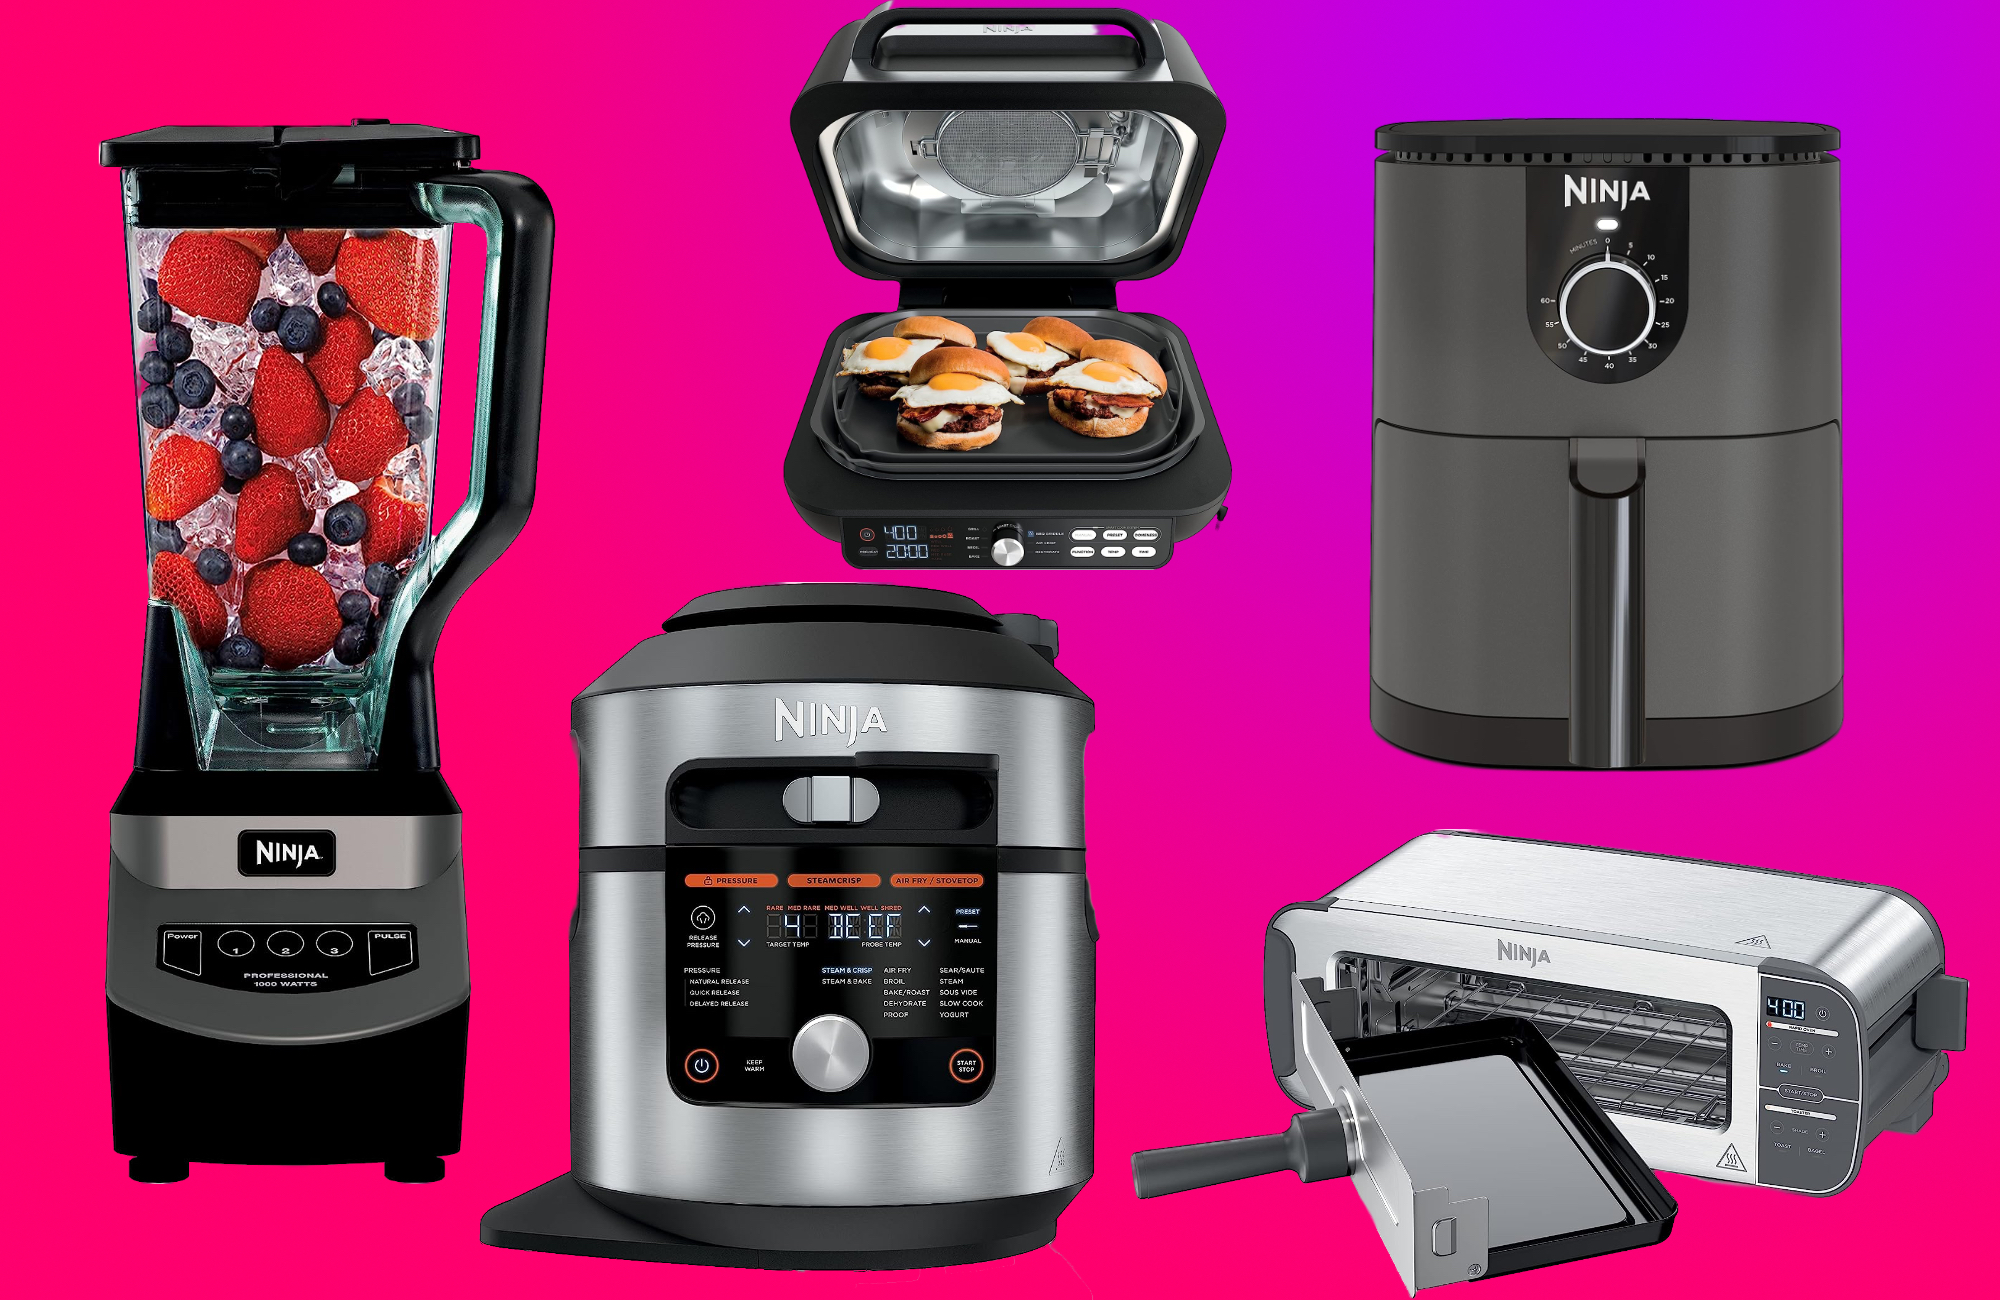 https://www.popsci.com/uploads/2023/07/11/The-Best-Ninja-Appliance-Prime-Day-Deals.jpg?auto=webp